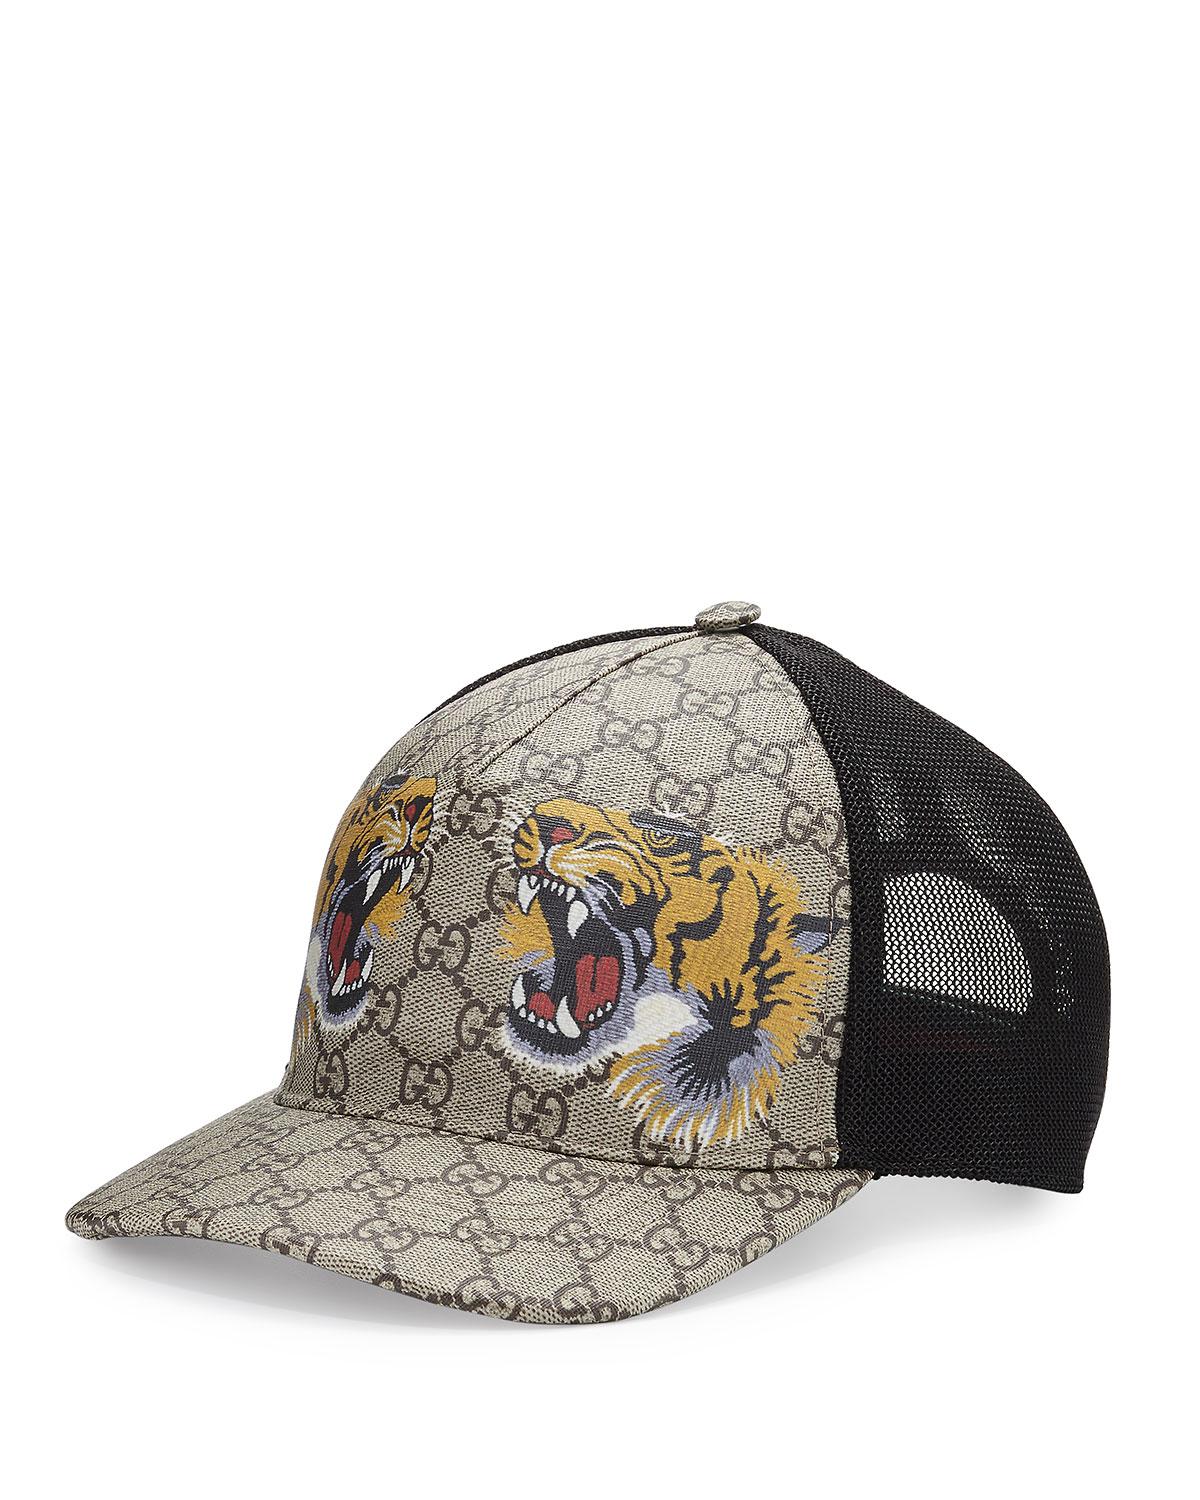 Gucci Tiger Cap Hot Sale, 54% OFF | wolfnebraska.com